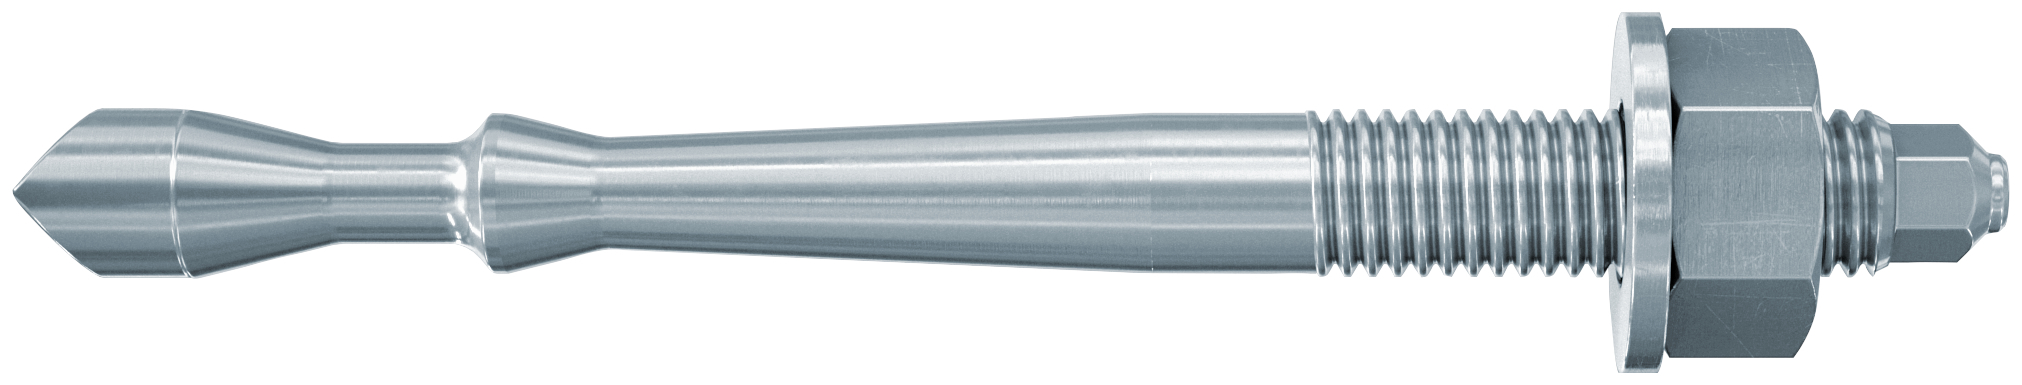 fischer Barra multicono in acciaio FHB II-A S M16x95-30 per ancorante chimico FIS HB (1 Pz.) Barra multicono corta in acciaio zincato classe 8.8. Massime prestazioni a trazione in calcestruzzo fessurato e a ridotte distanze dai bordi. fie1180